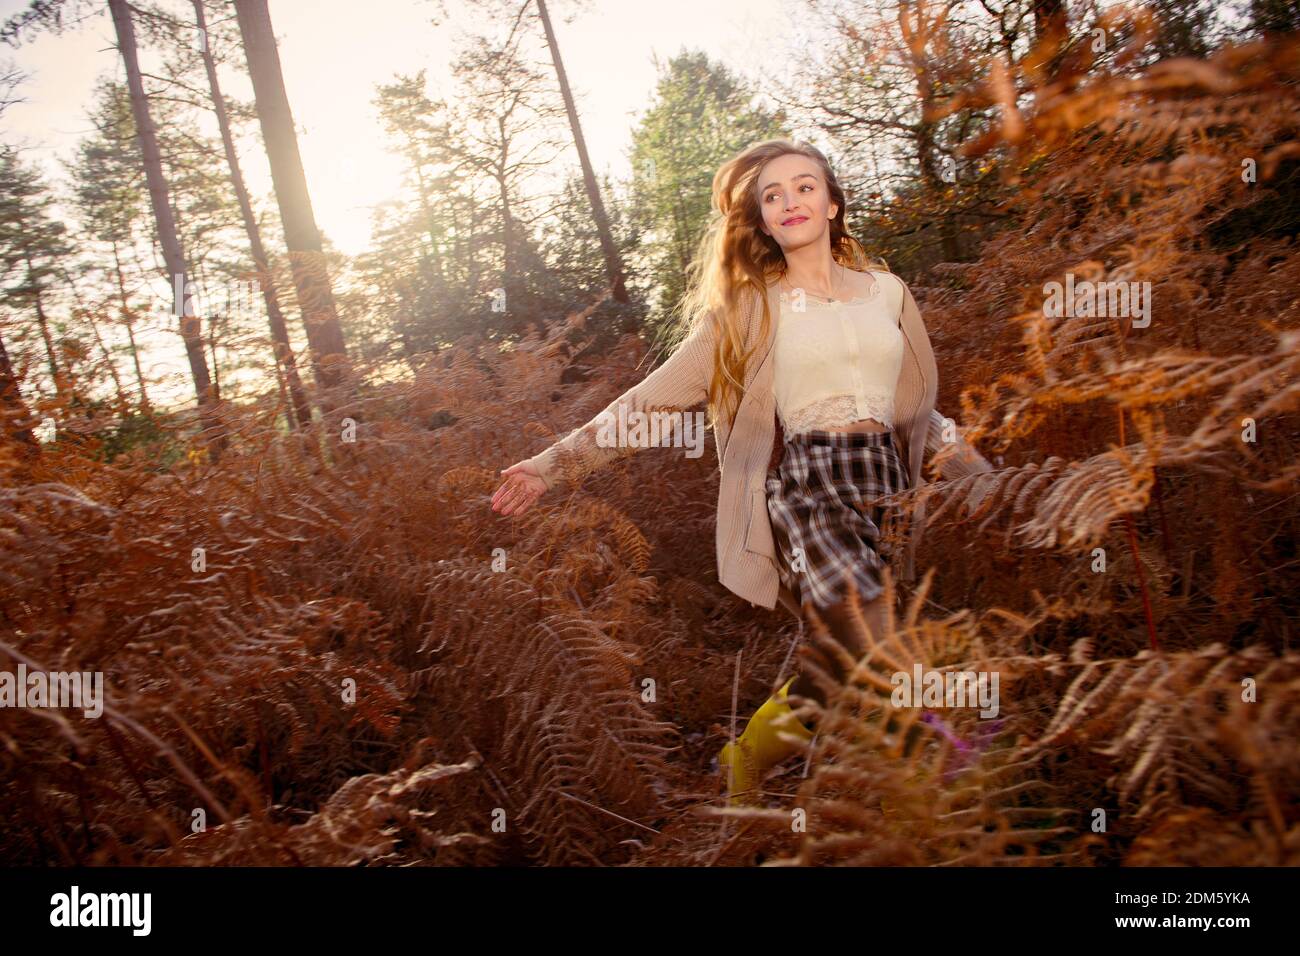 Eine junge, natürlich schöne Frau (20 Jahre) läuft durch die herbstlichen Farne, die sich an einem sonnigen Tag in einer Waldlandschaft mit einem Gefühl der Bewegung amüsieren. Stockfoto